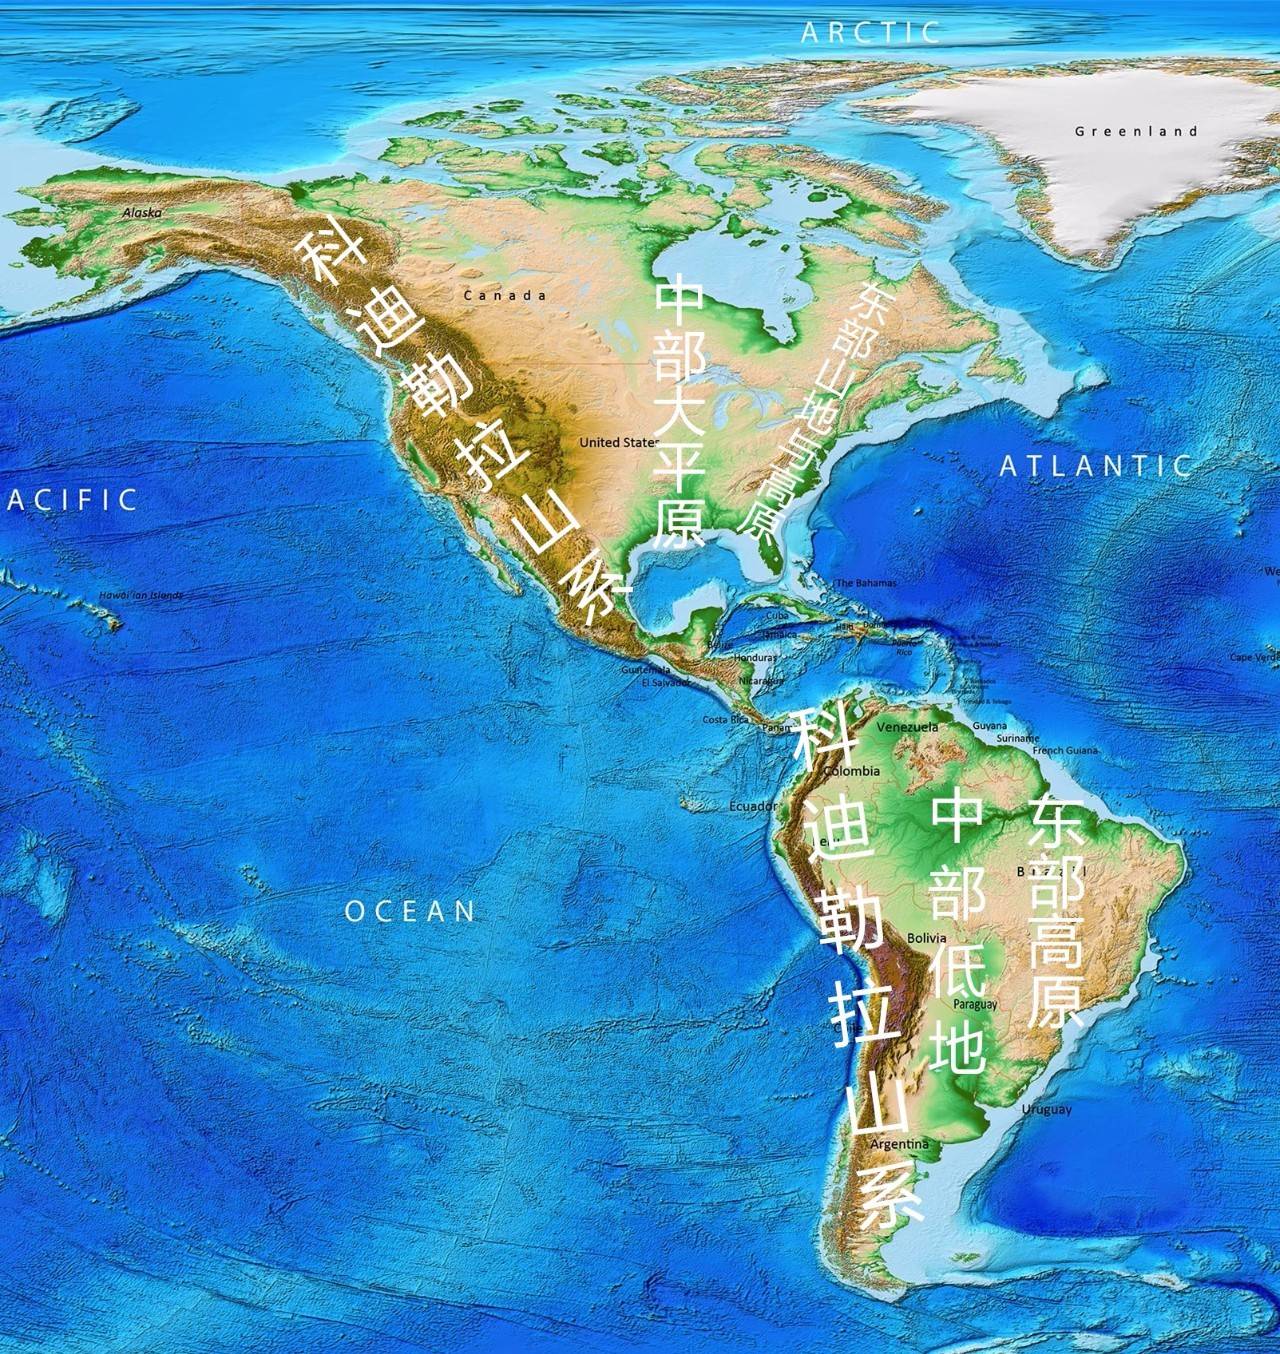 ▼(地图源自美国国家海洋和大气管理局,星球研究所标注)中部形成平原